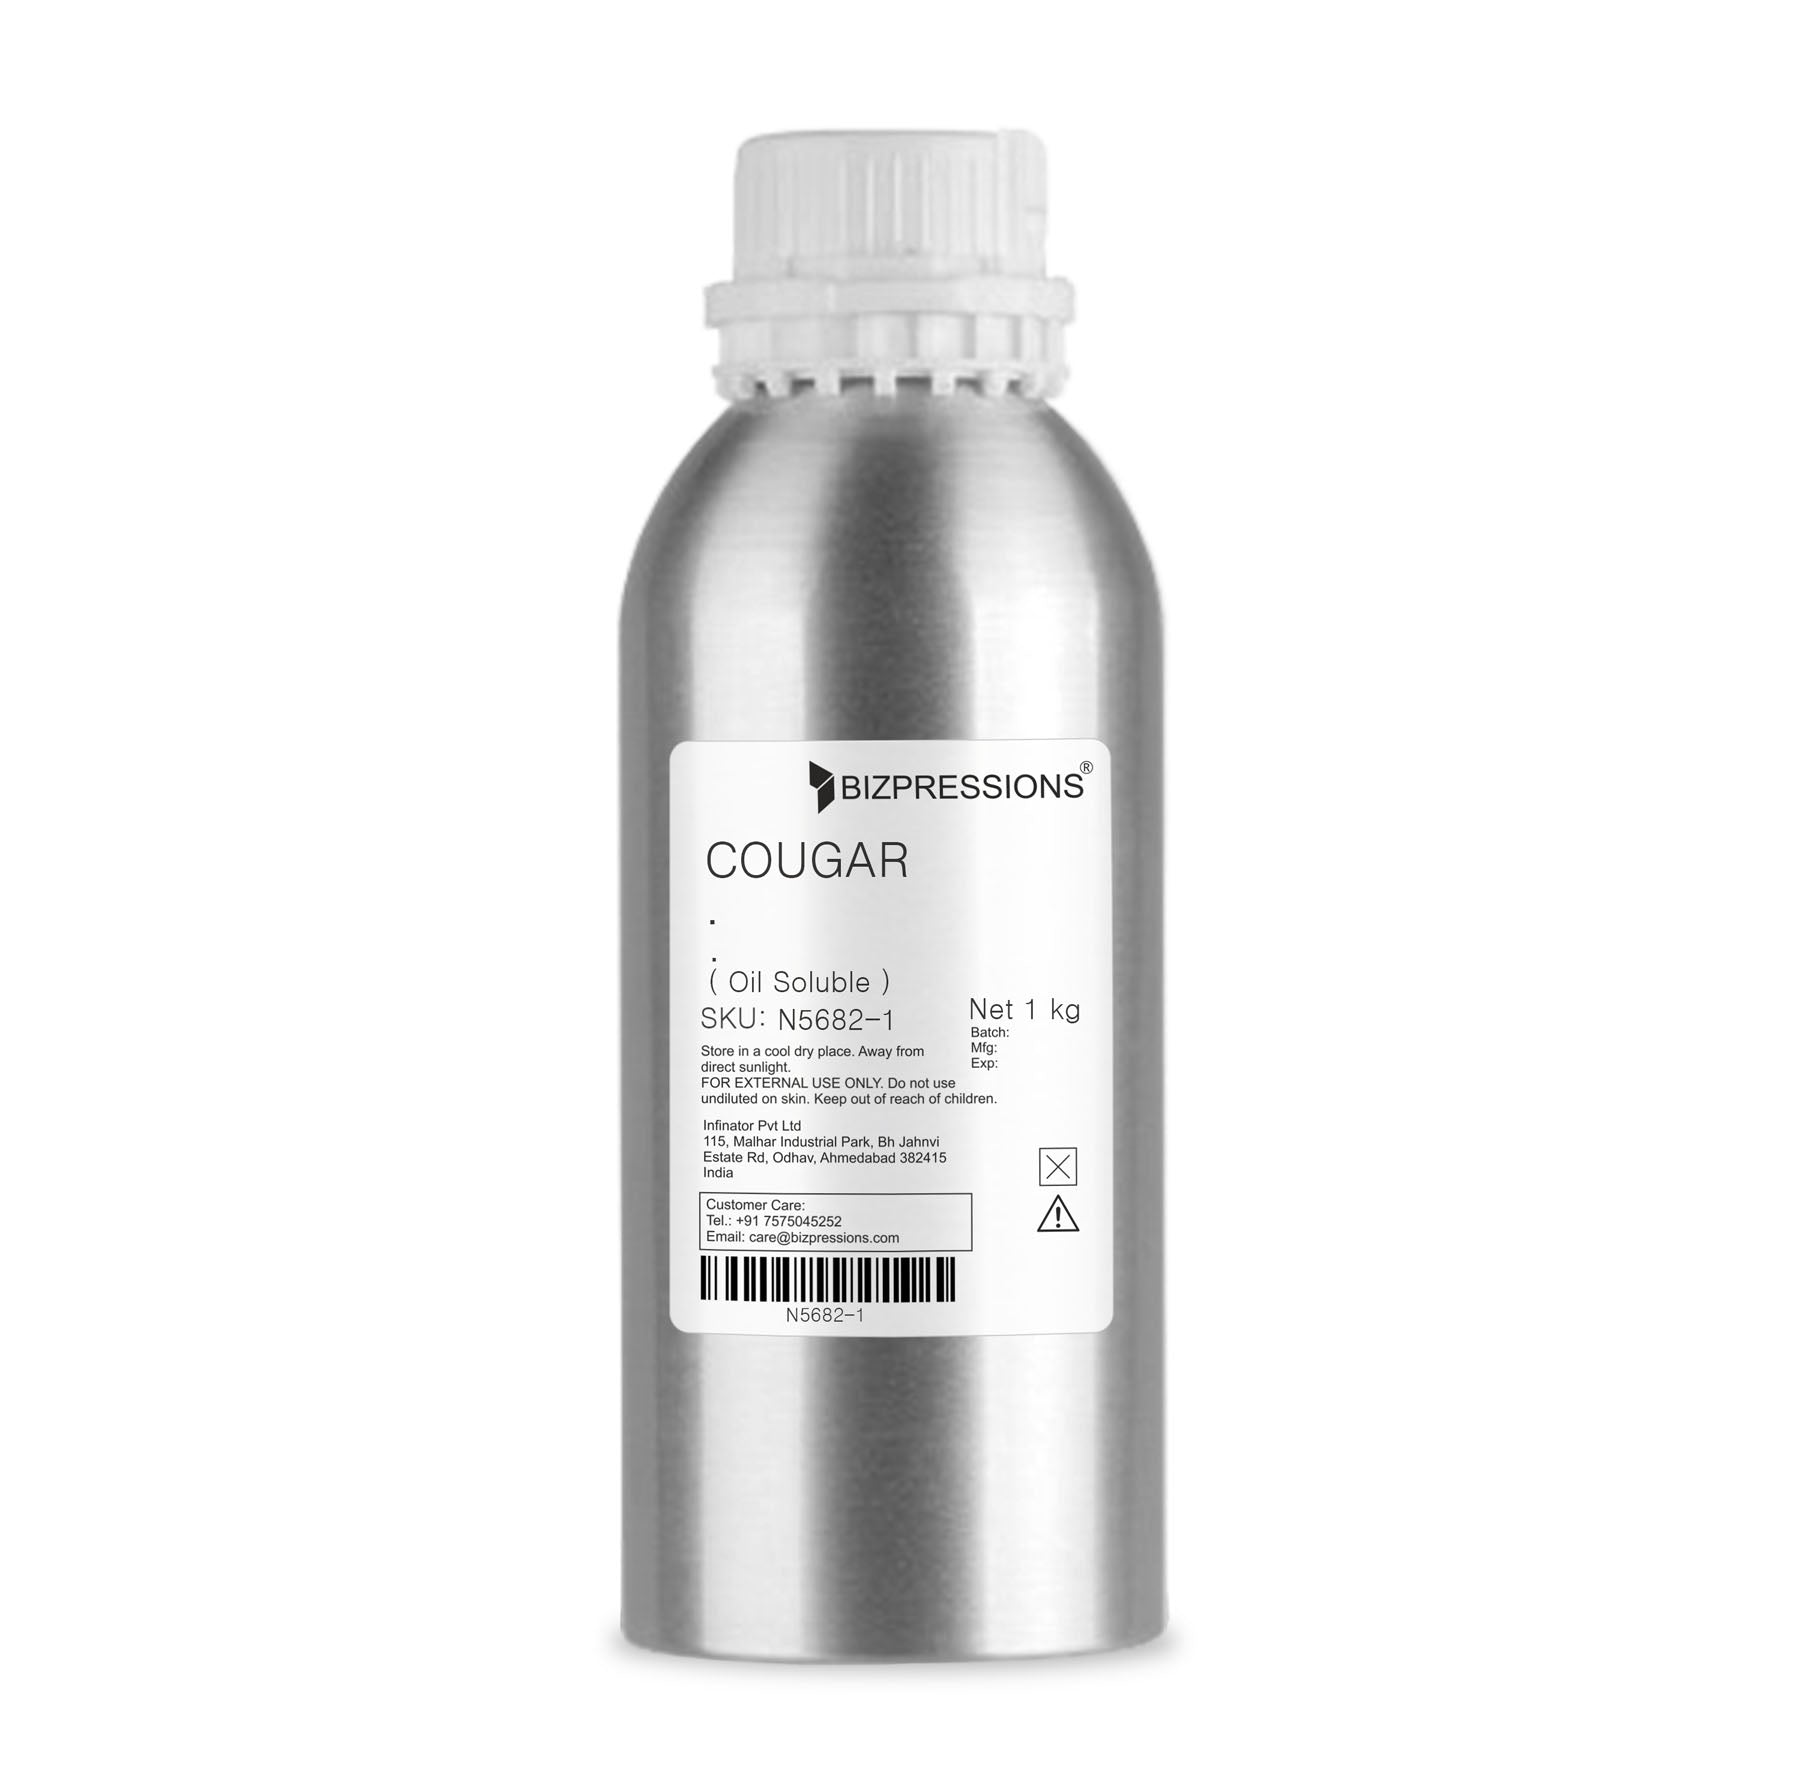 COUGAR - Fragrance ( Oil Soluble ) - 1 kg